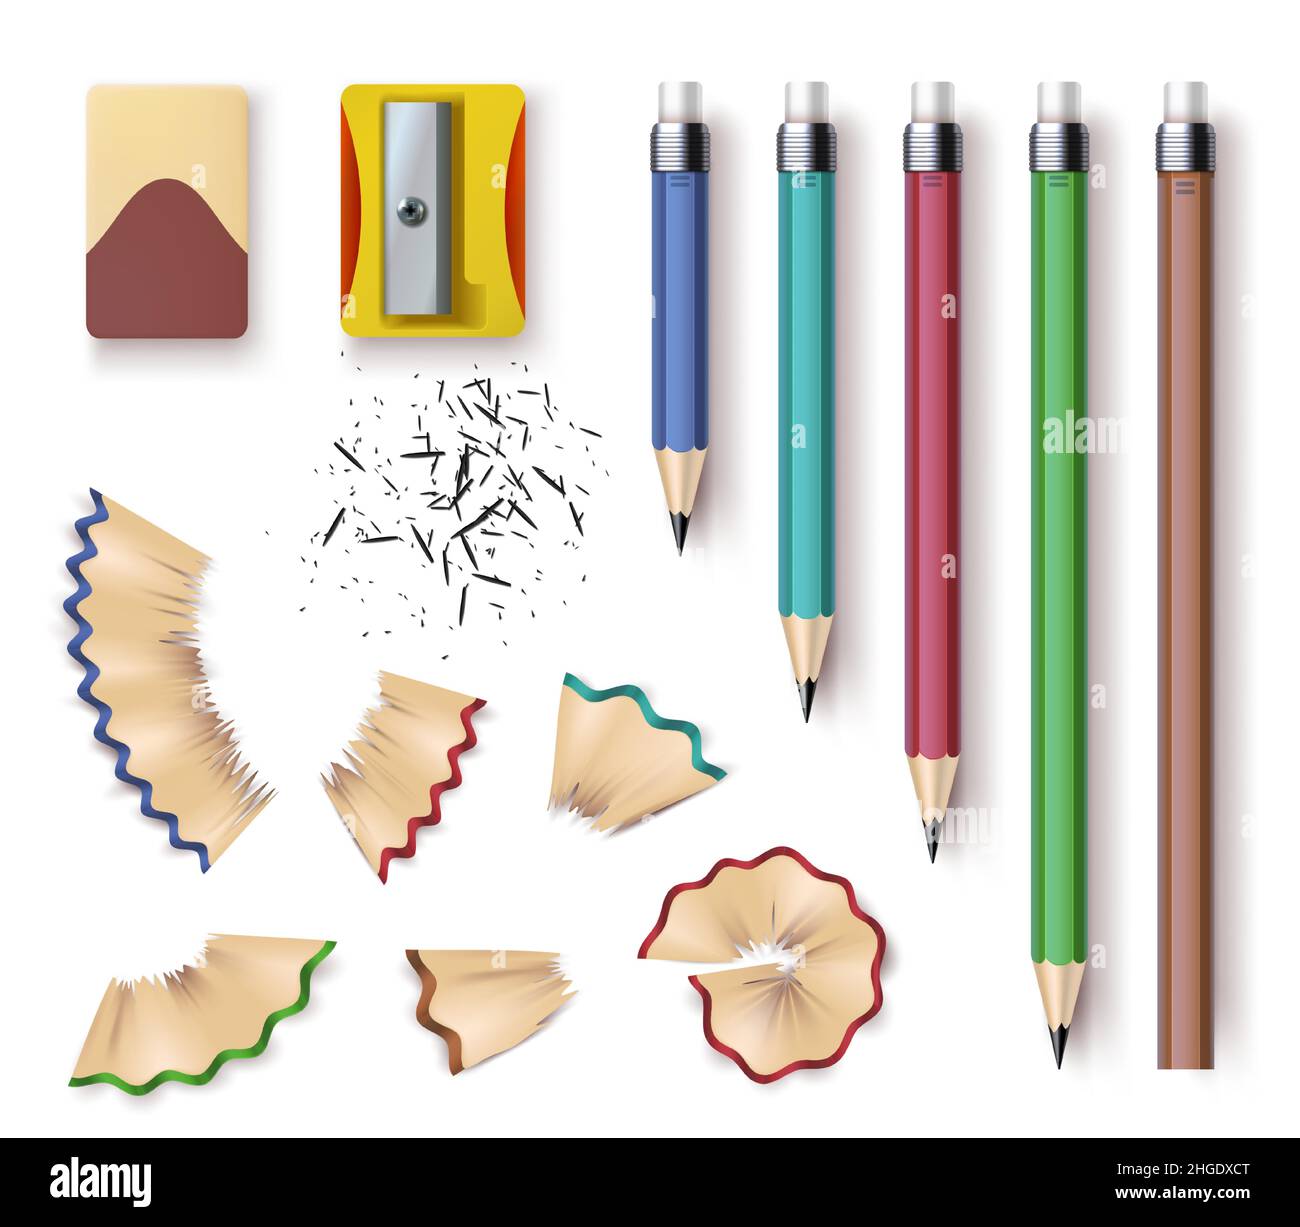 Realistische Bleistifte aus Holz, Spitzer, Radierer und Holzspänder. Geschärfte Bleistiftgrößen, Schreib- und Zeichenwerkzeuge. Briefpapier-Vektorset Stock Vektor